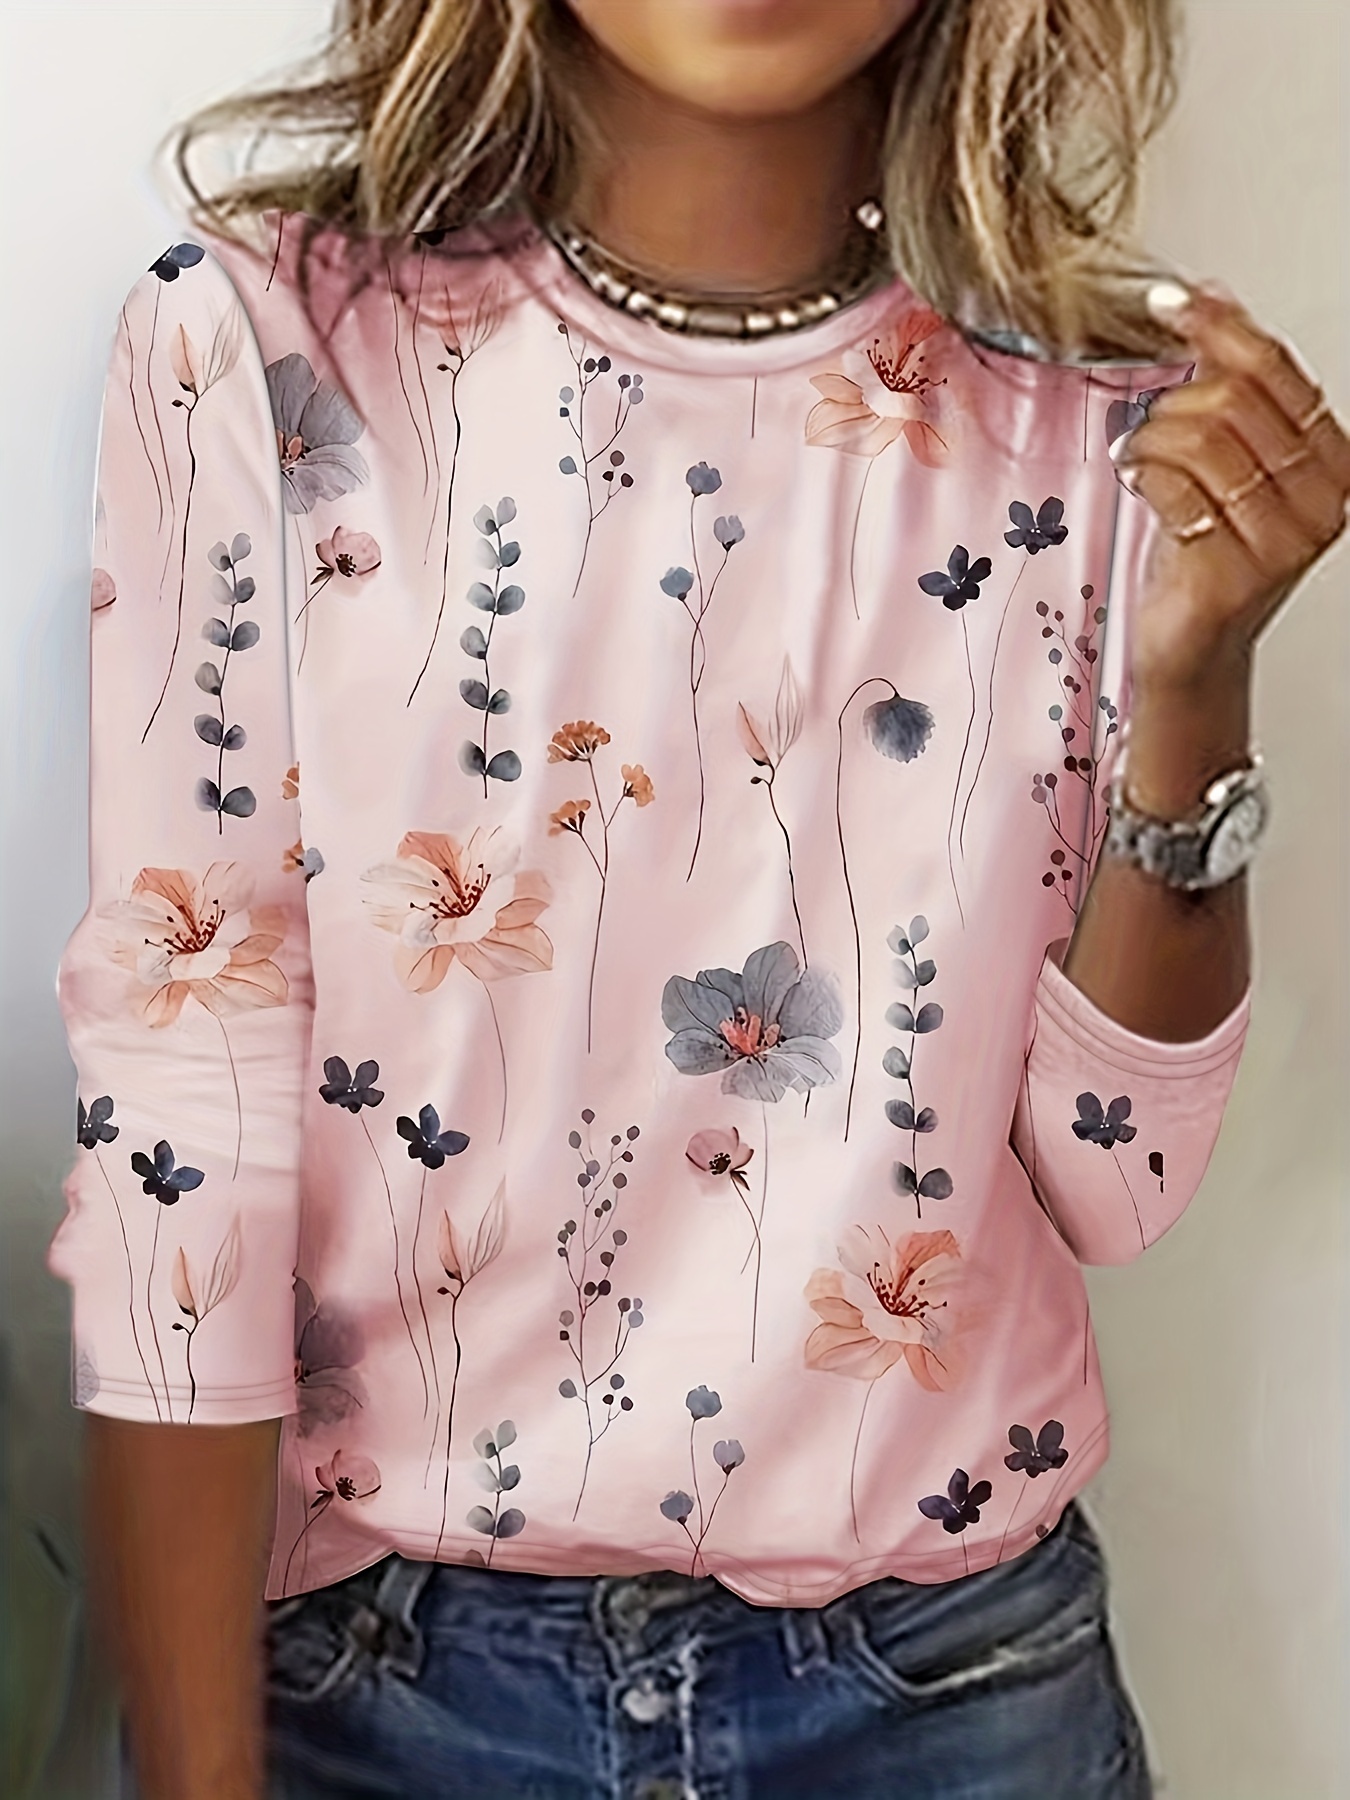 Camiseta de gola redonda com estampa floral, camiseta casual de manga comprida para primavera e outono, roupas femininas